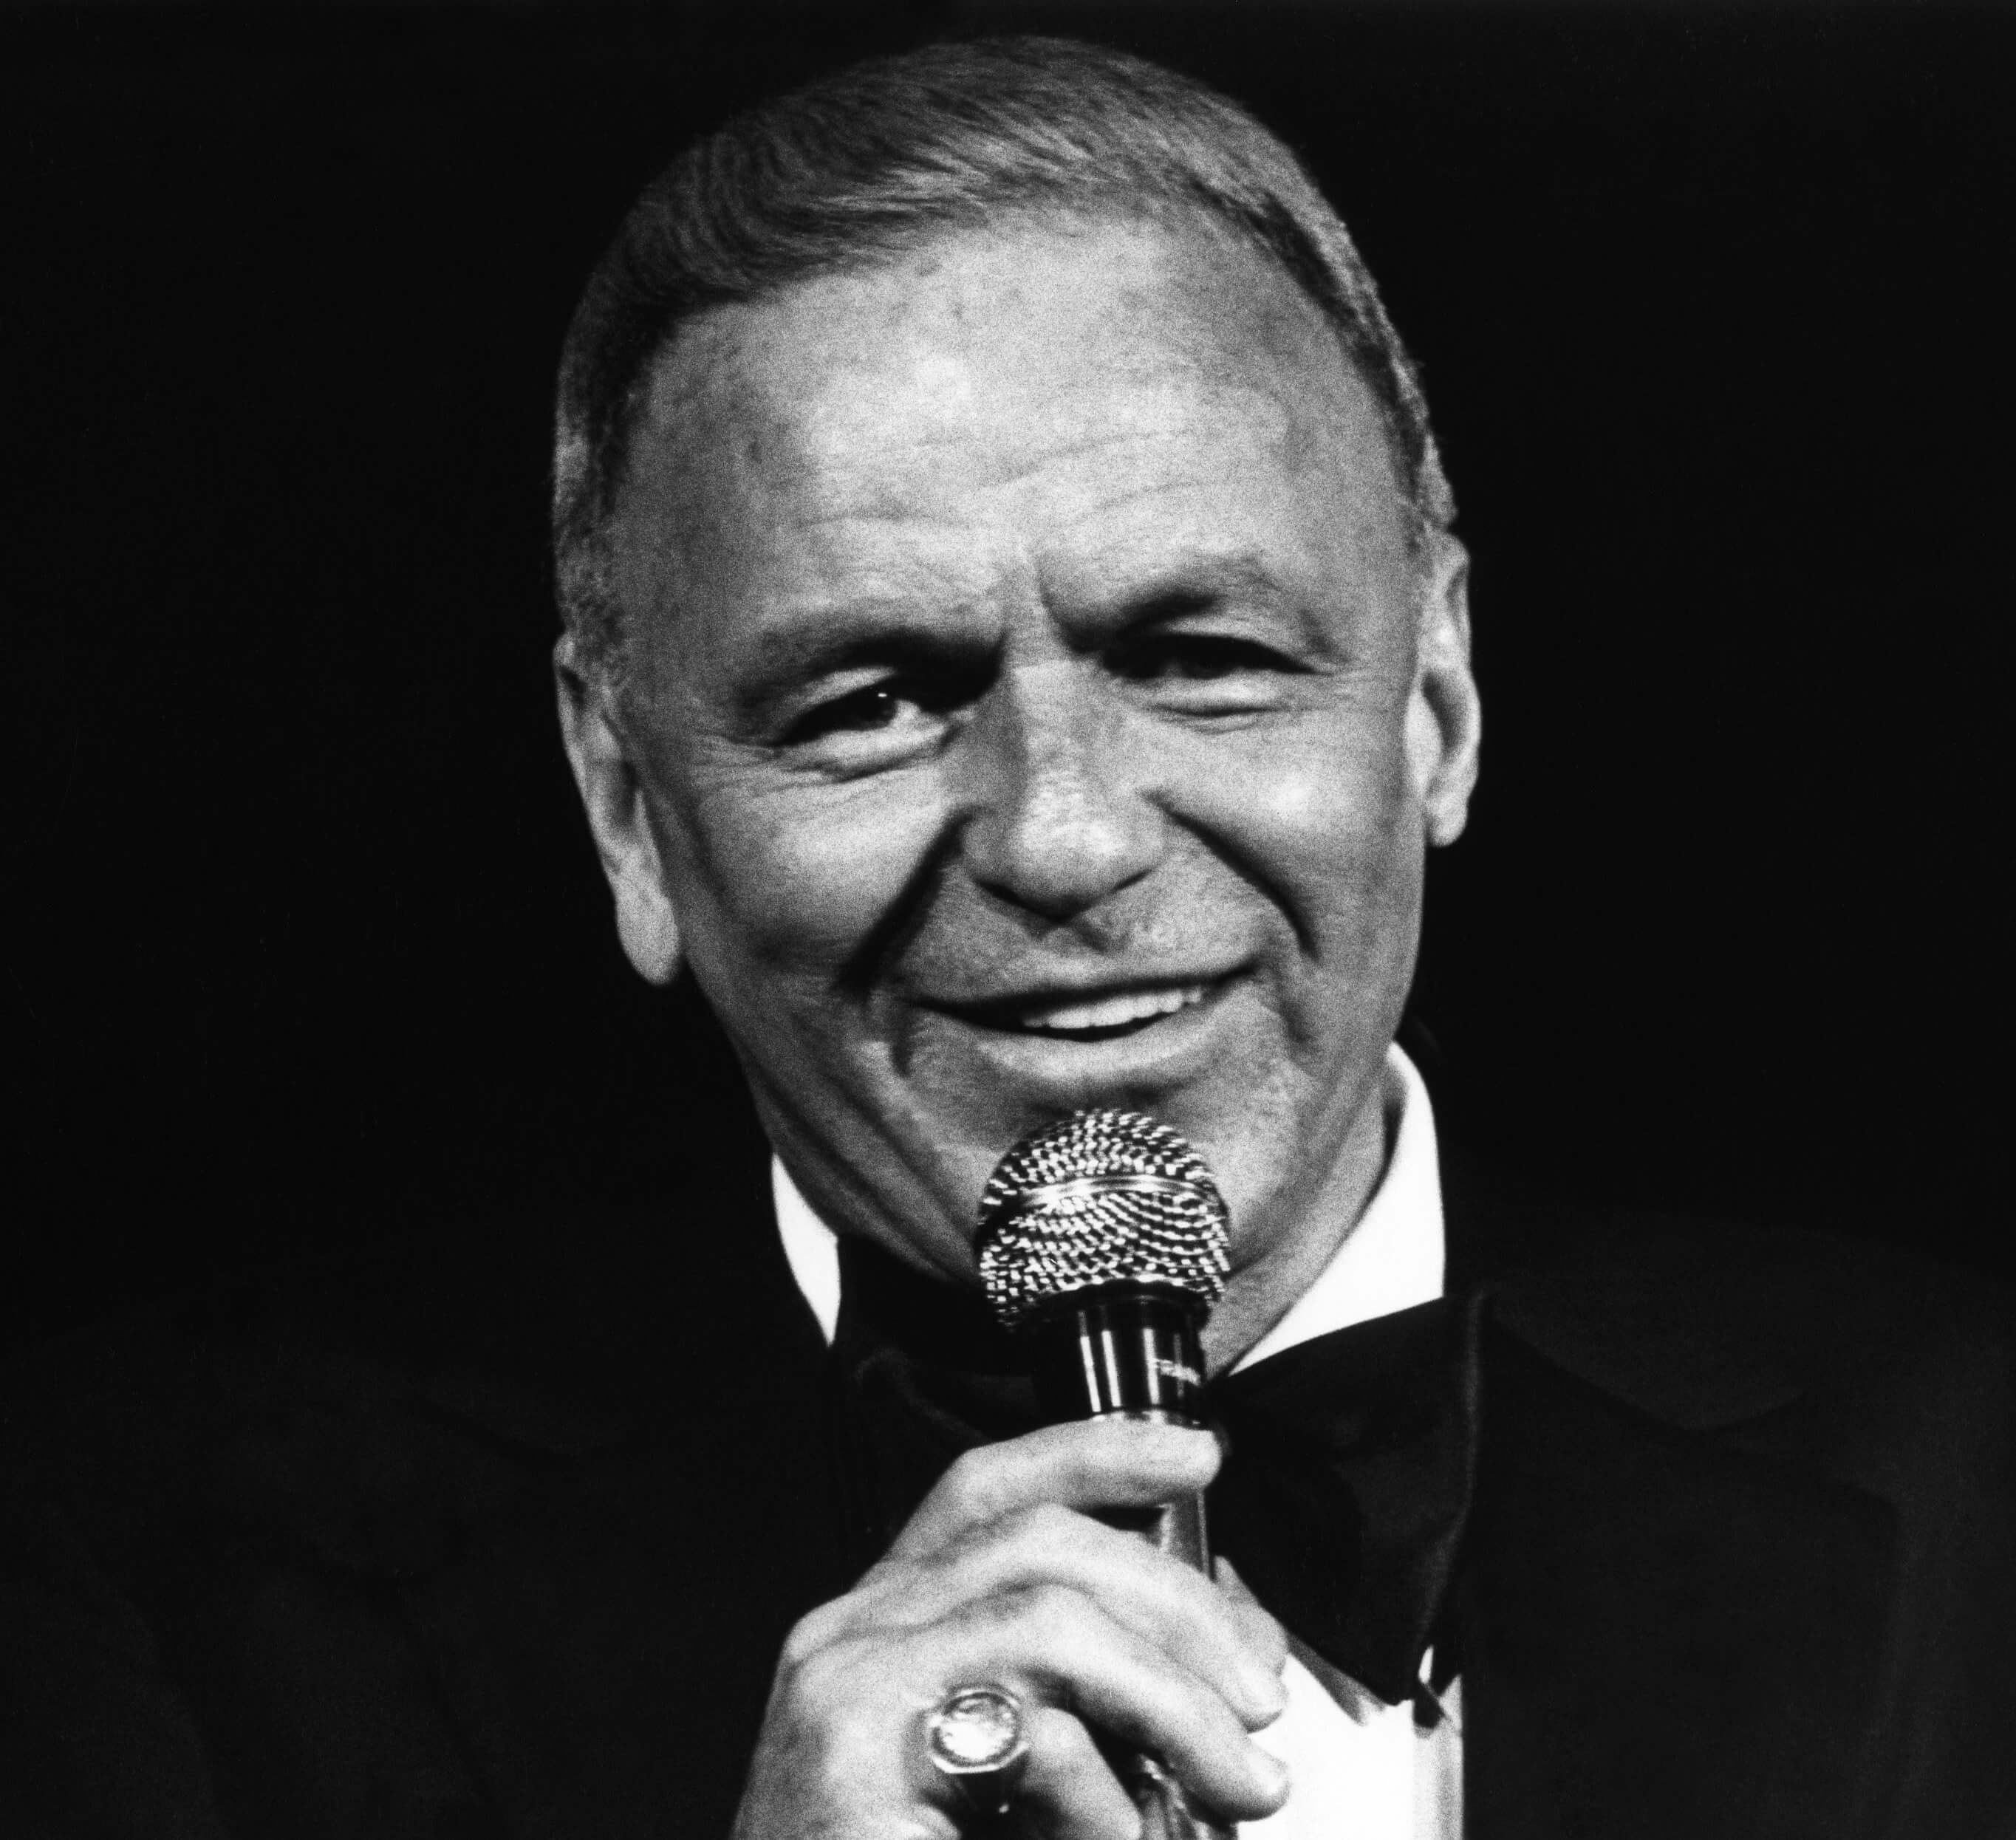 ทำไม Paul Anka ถึงมอบ 'ทางของฉัน' ให้กับ Frank Sinatra